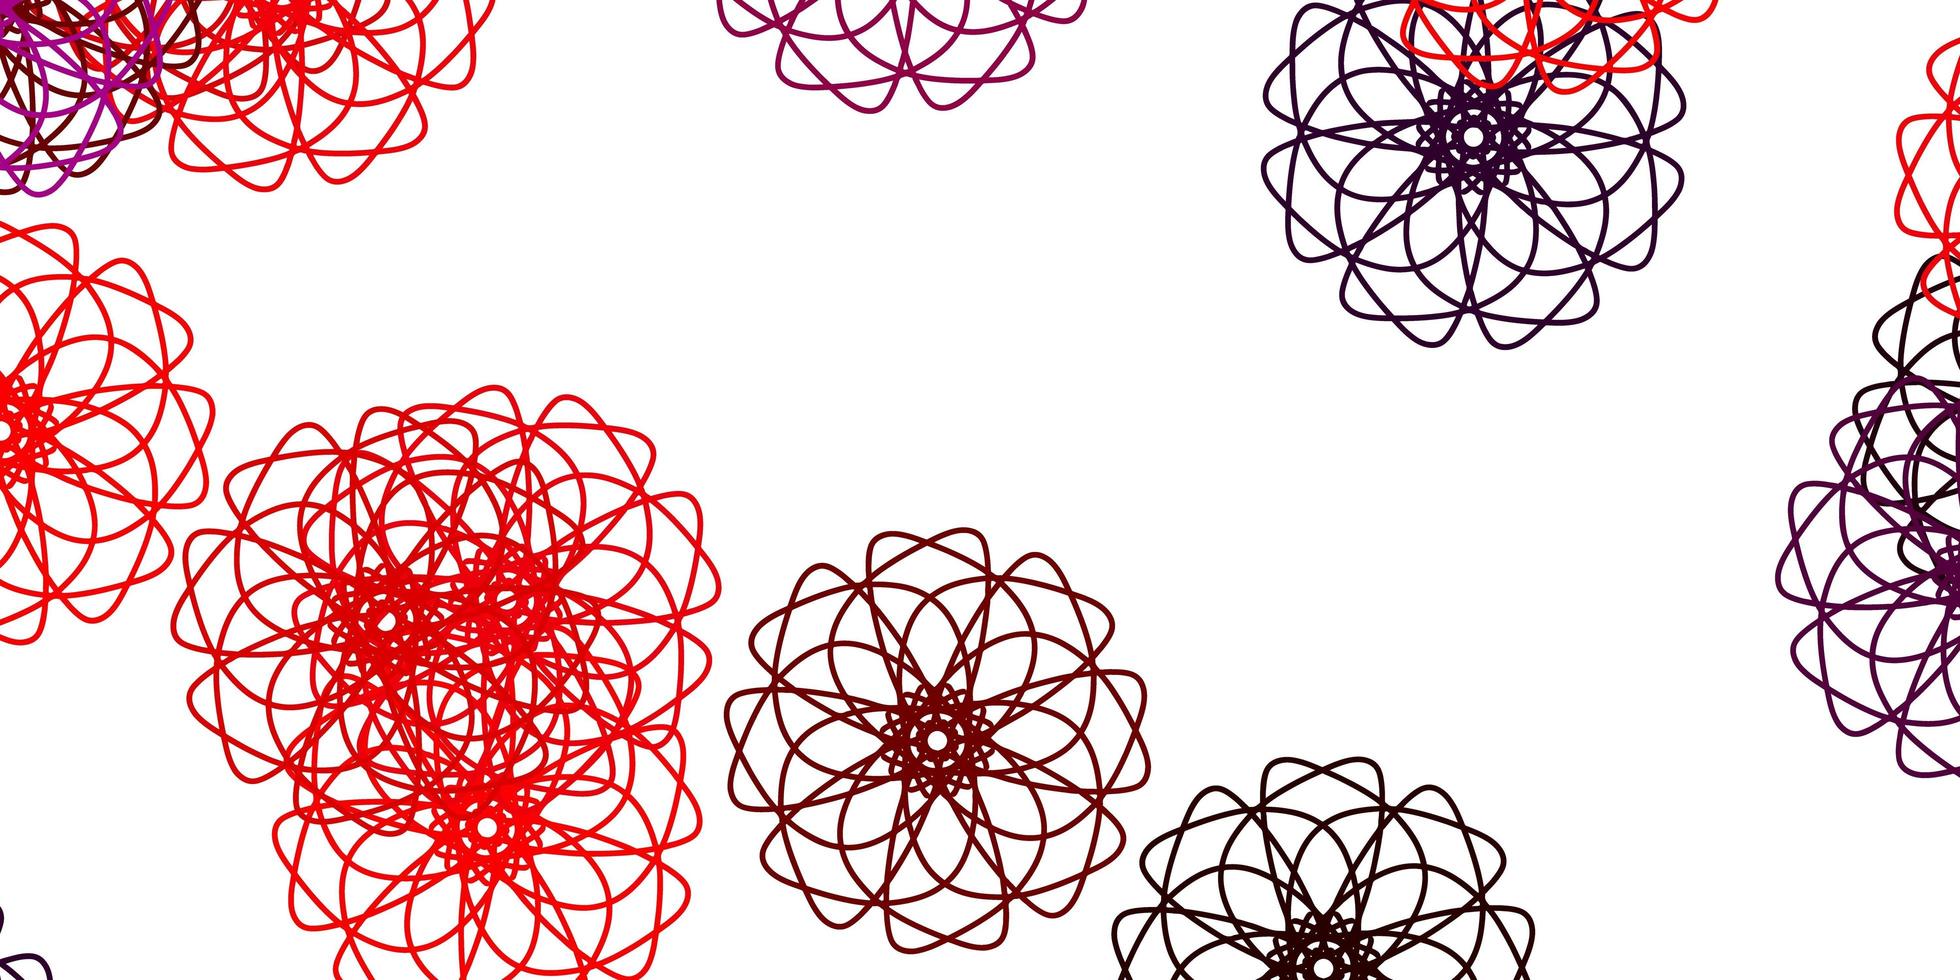 modello di doodle vettoriale rosa chiaro, rosso con fiori.